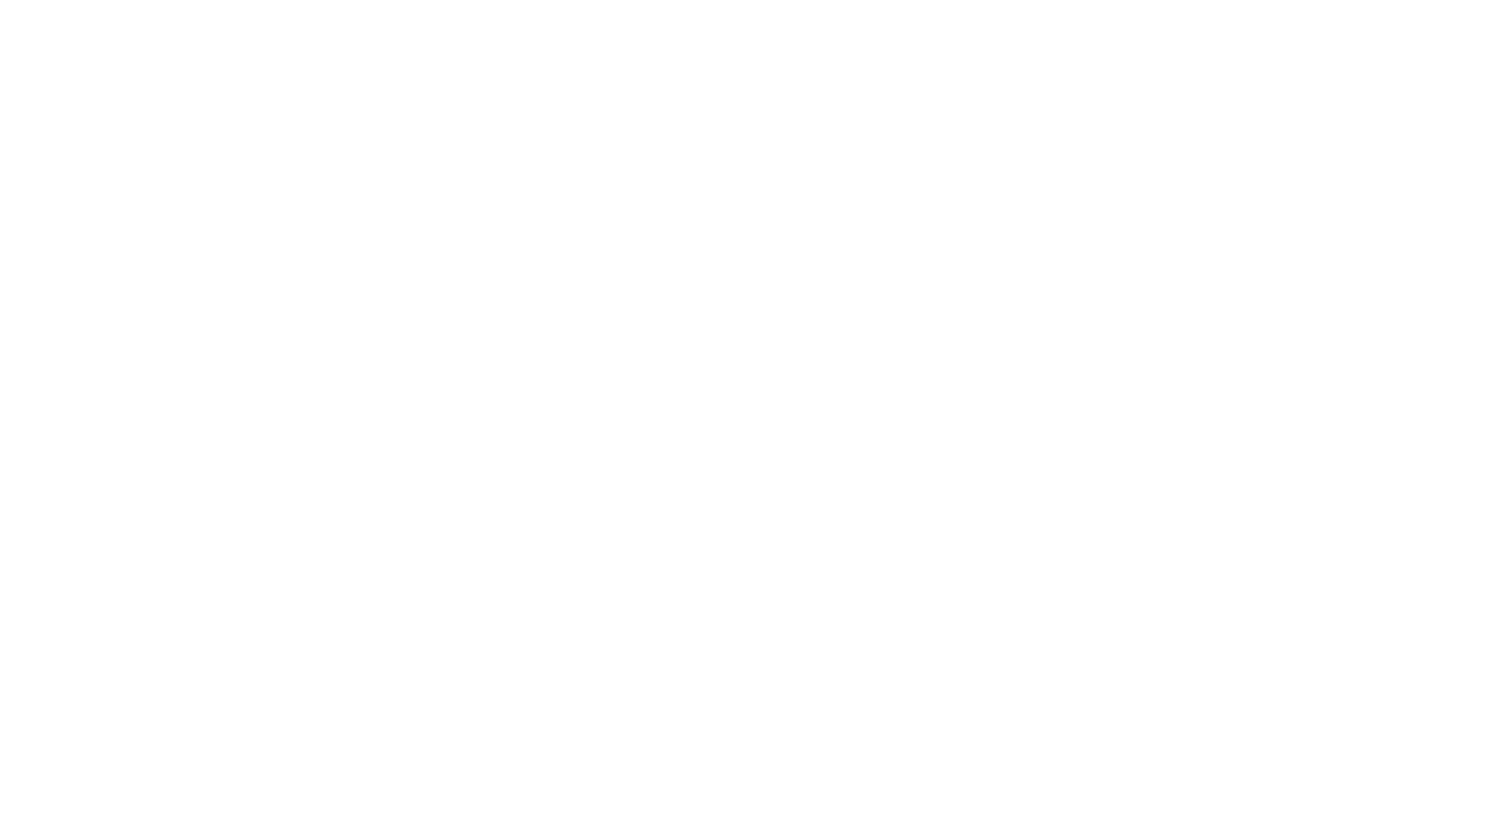 Del Campo Empanadas